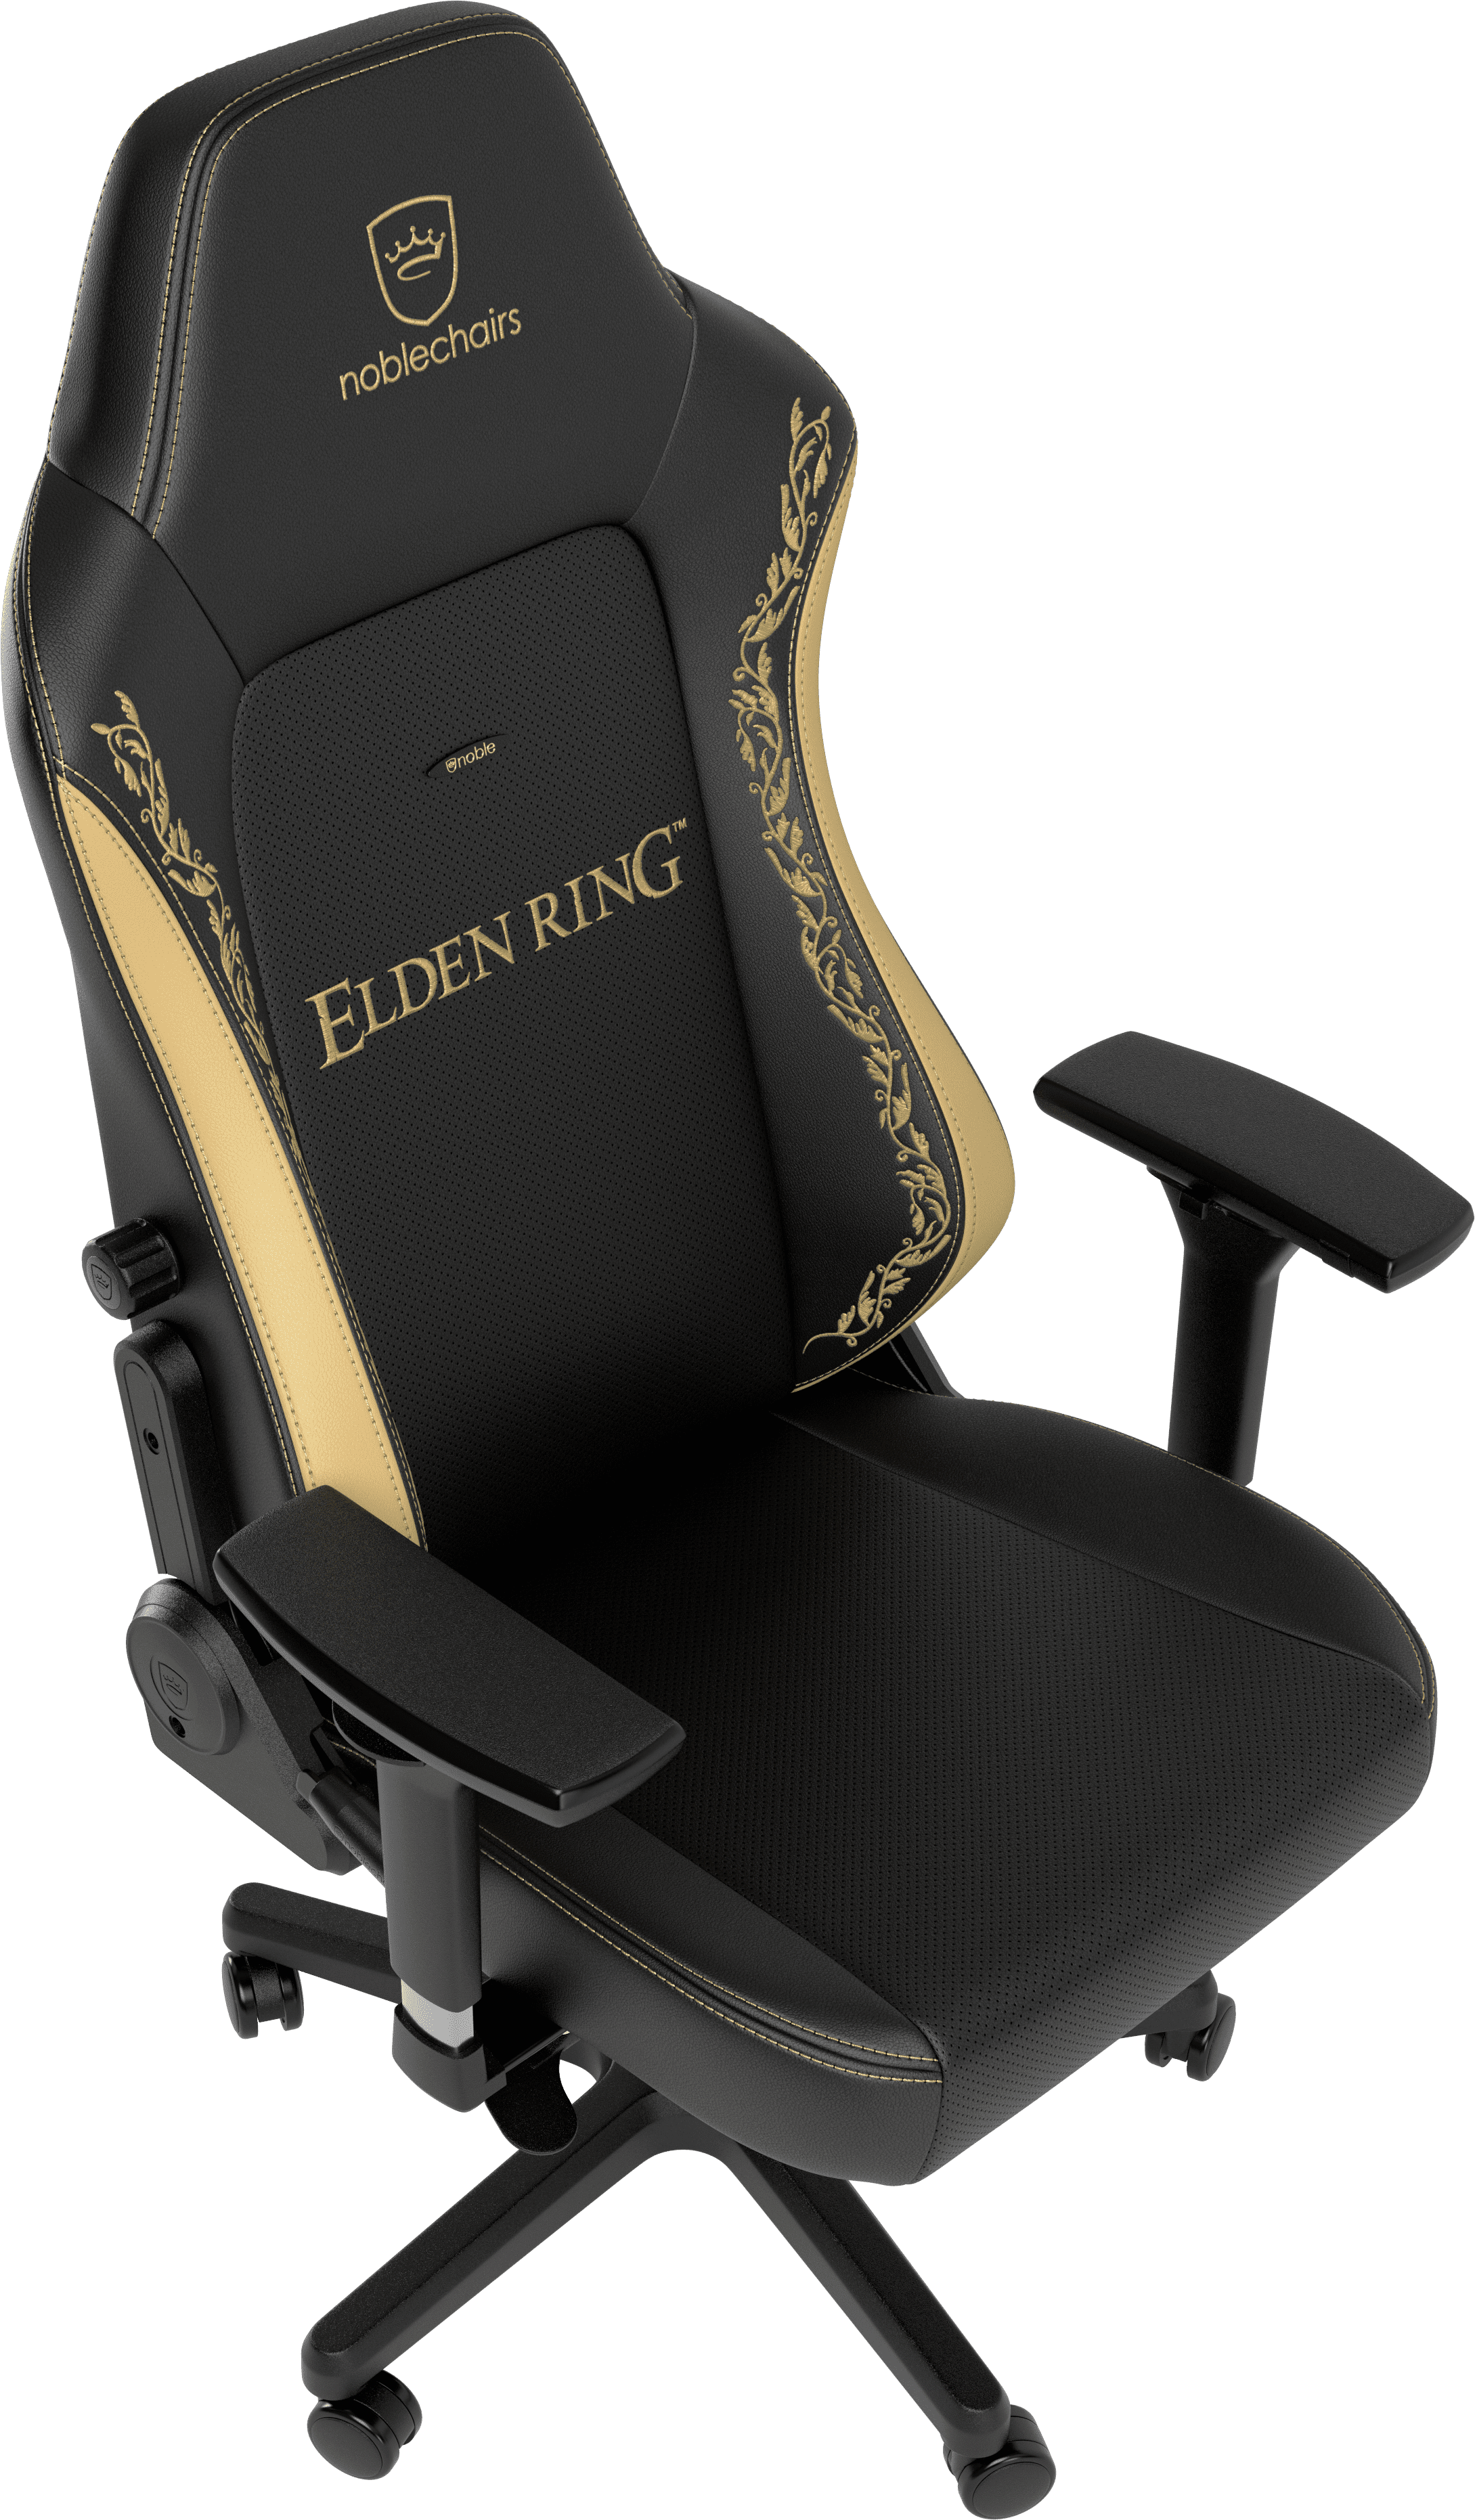 comfort noblechairs HERO Elden Ring Edition